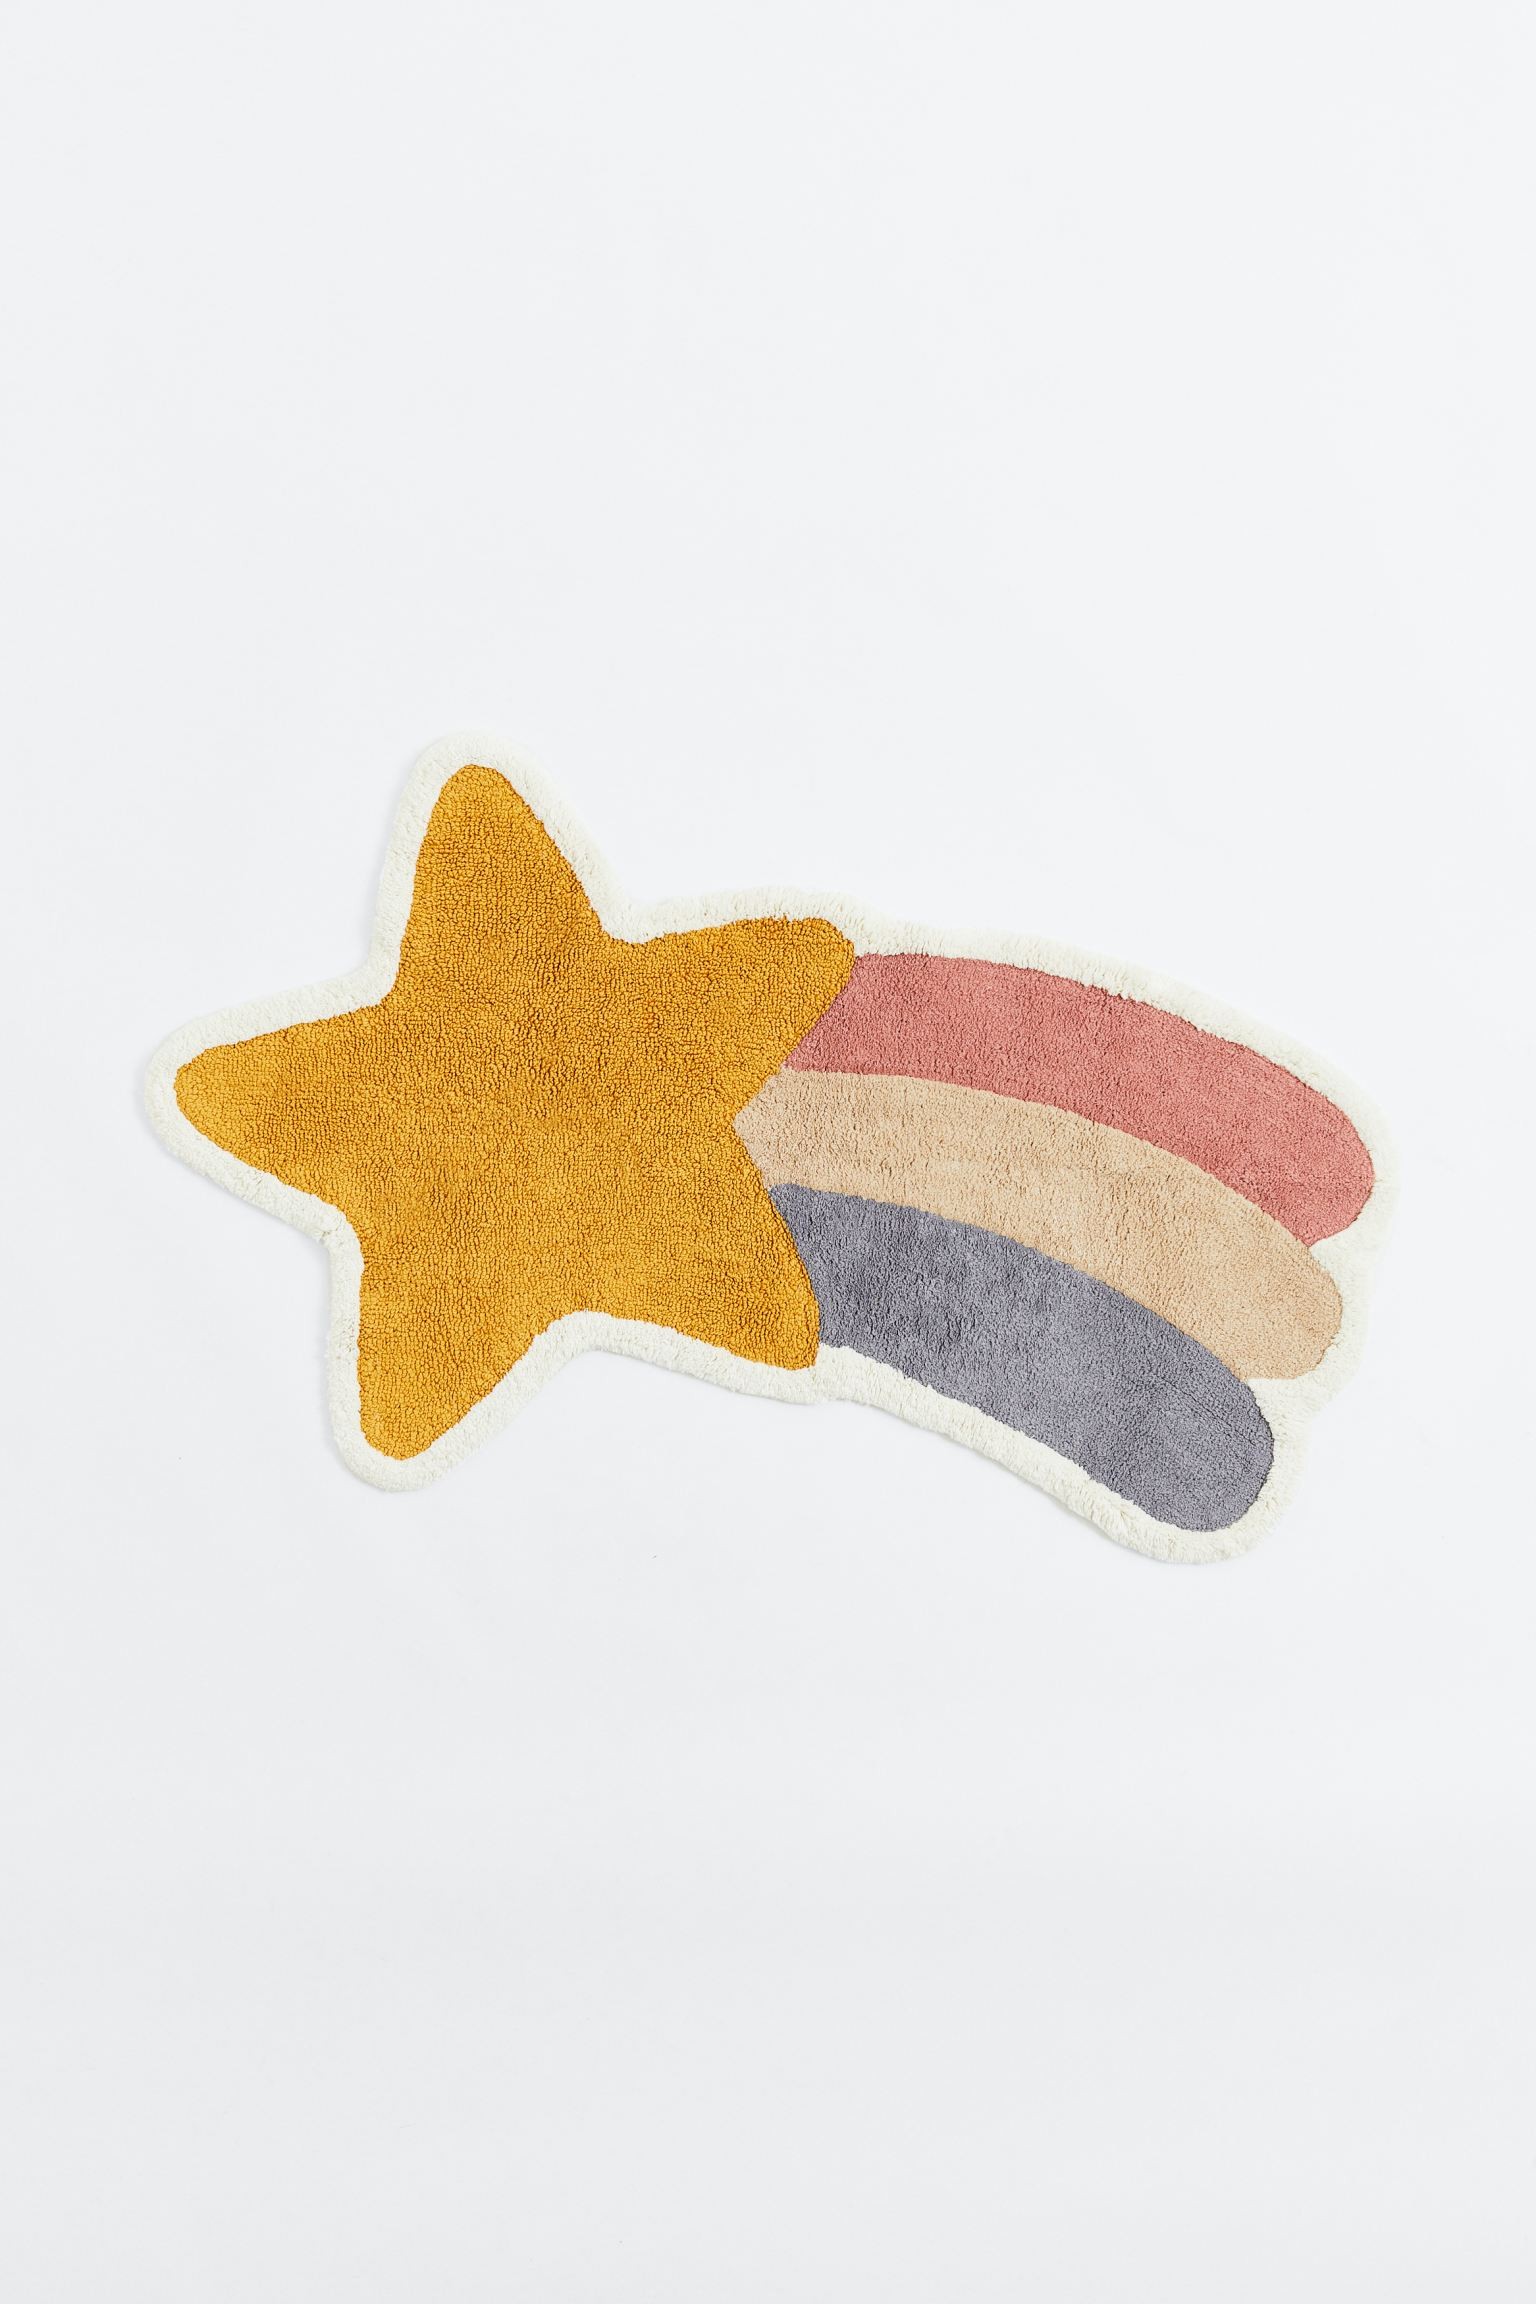 Пушистый ковер в форме звезды, Желтый/Звезда, Разные размеры